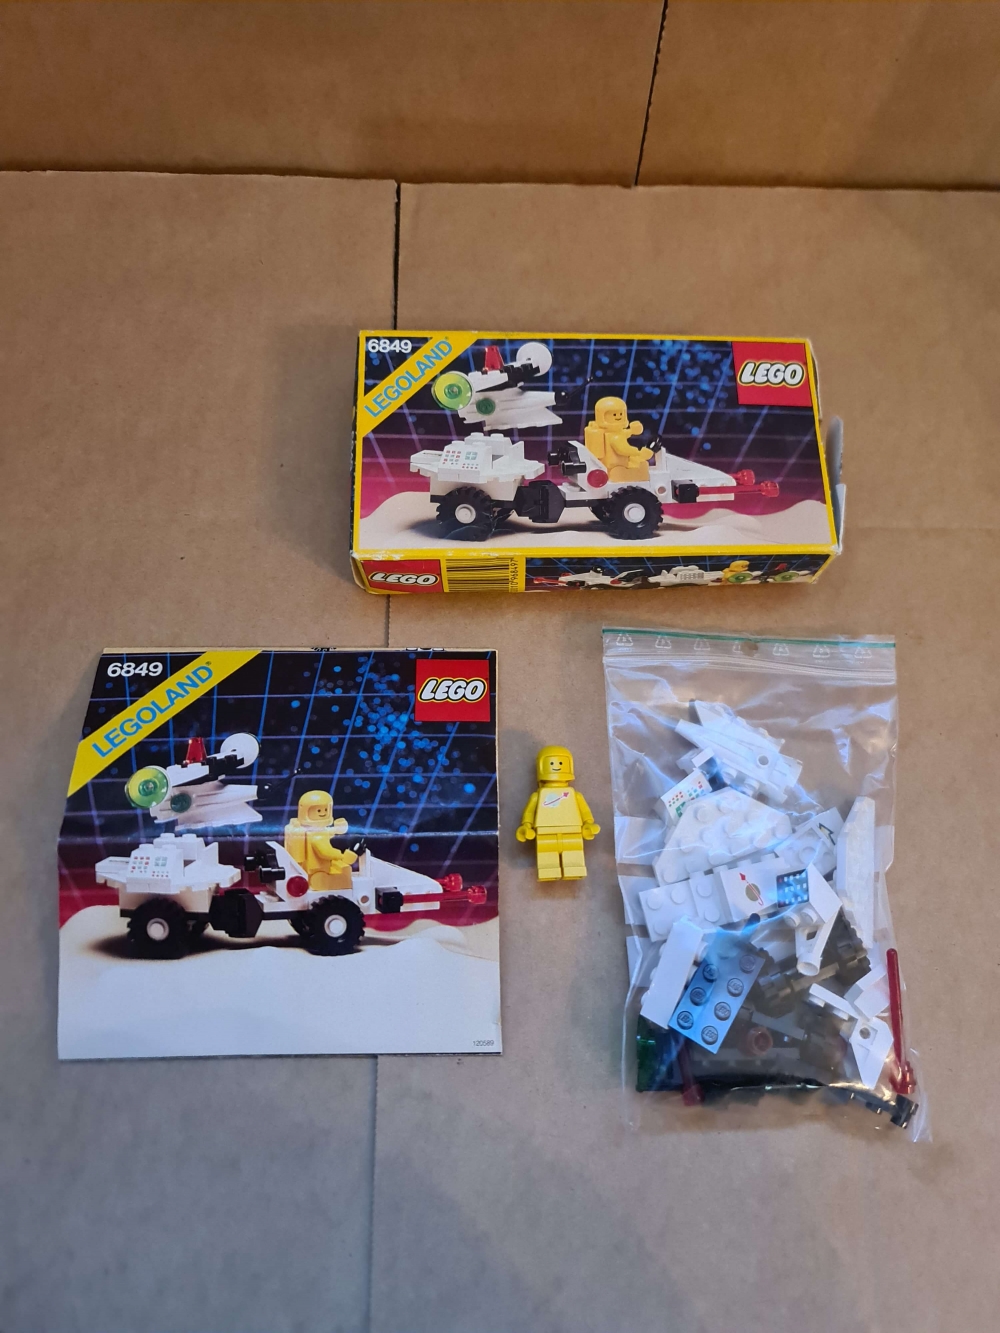 Sett 6849 fra Lego Classic Space serien.
Komplett med manual og eske.